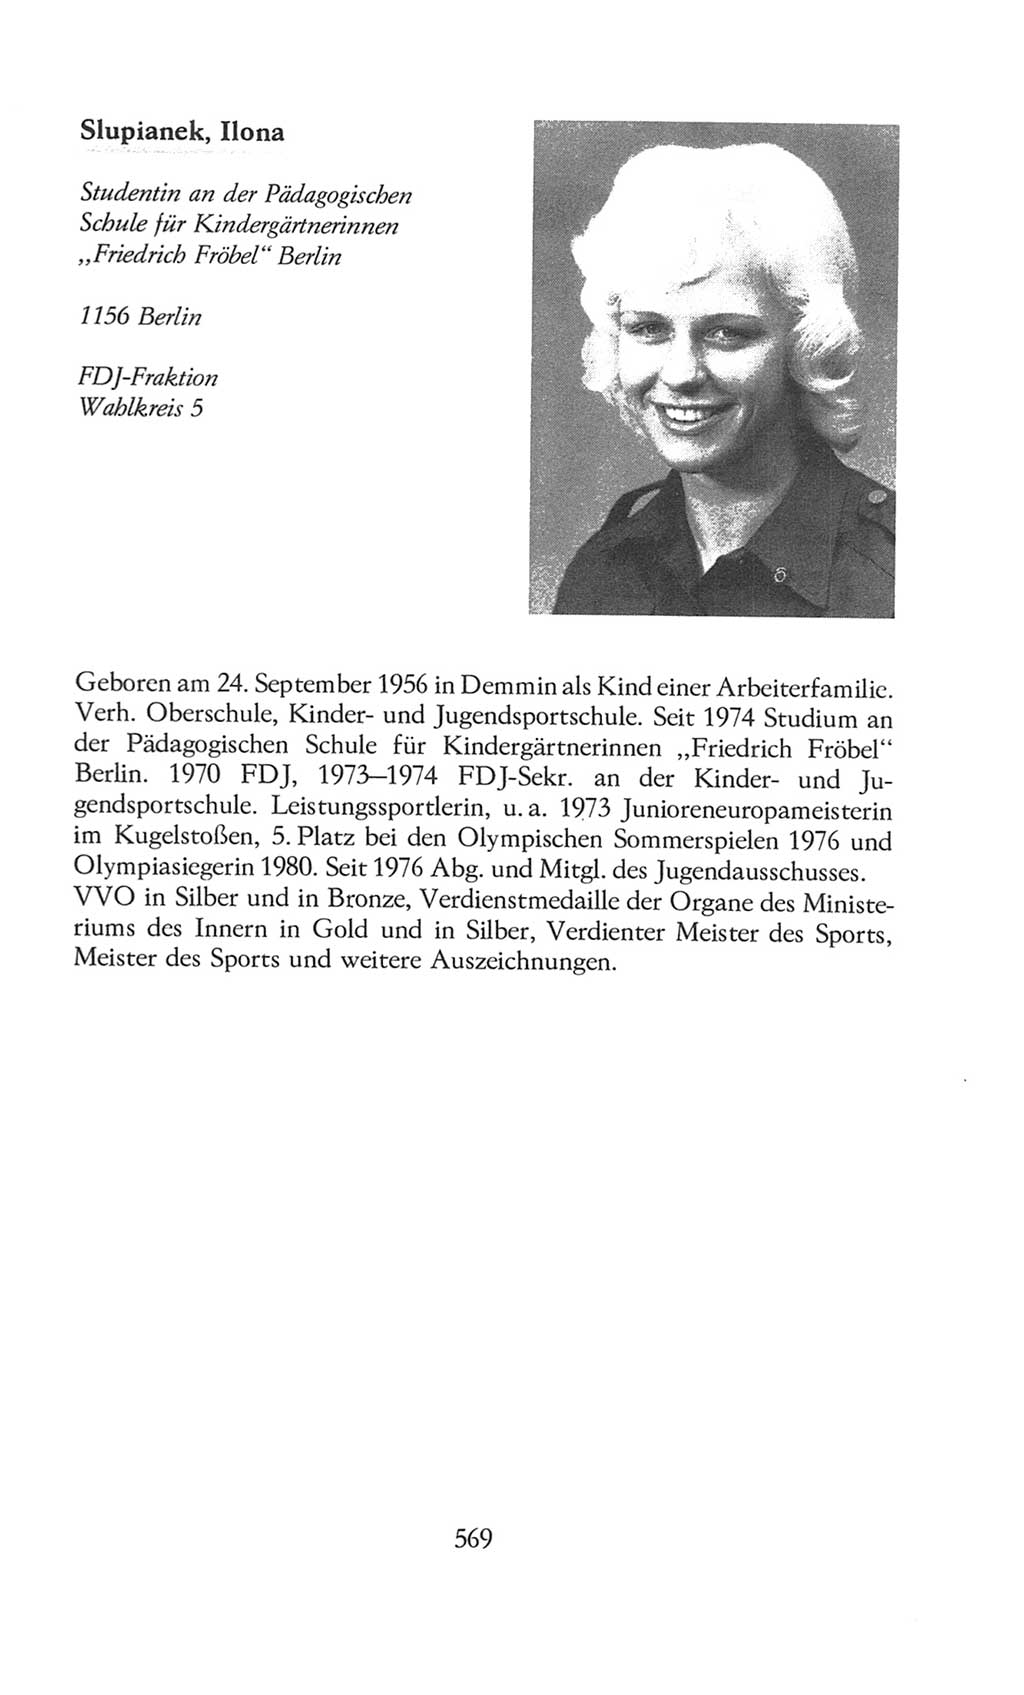 Volkskammer (VK) der Deutschen Demokratischen Republik (DDR), 8. Wahlperiode 1981-1986, Seite 569 (VK. DDR 8. WP. 1981-1986, S. 569)